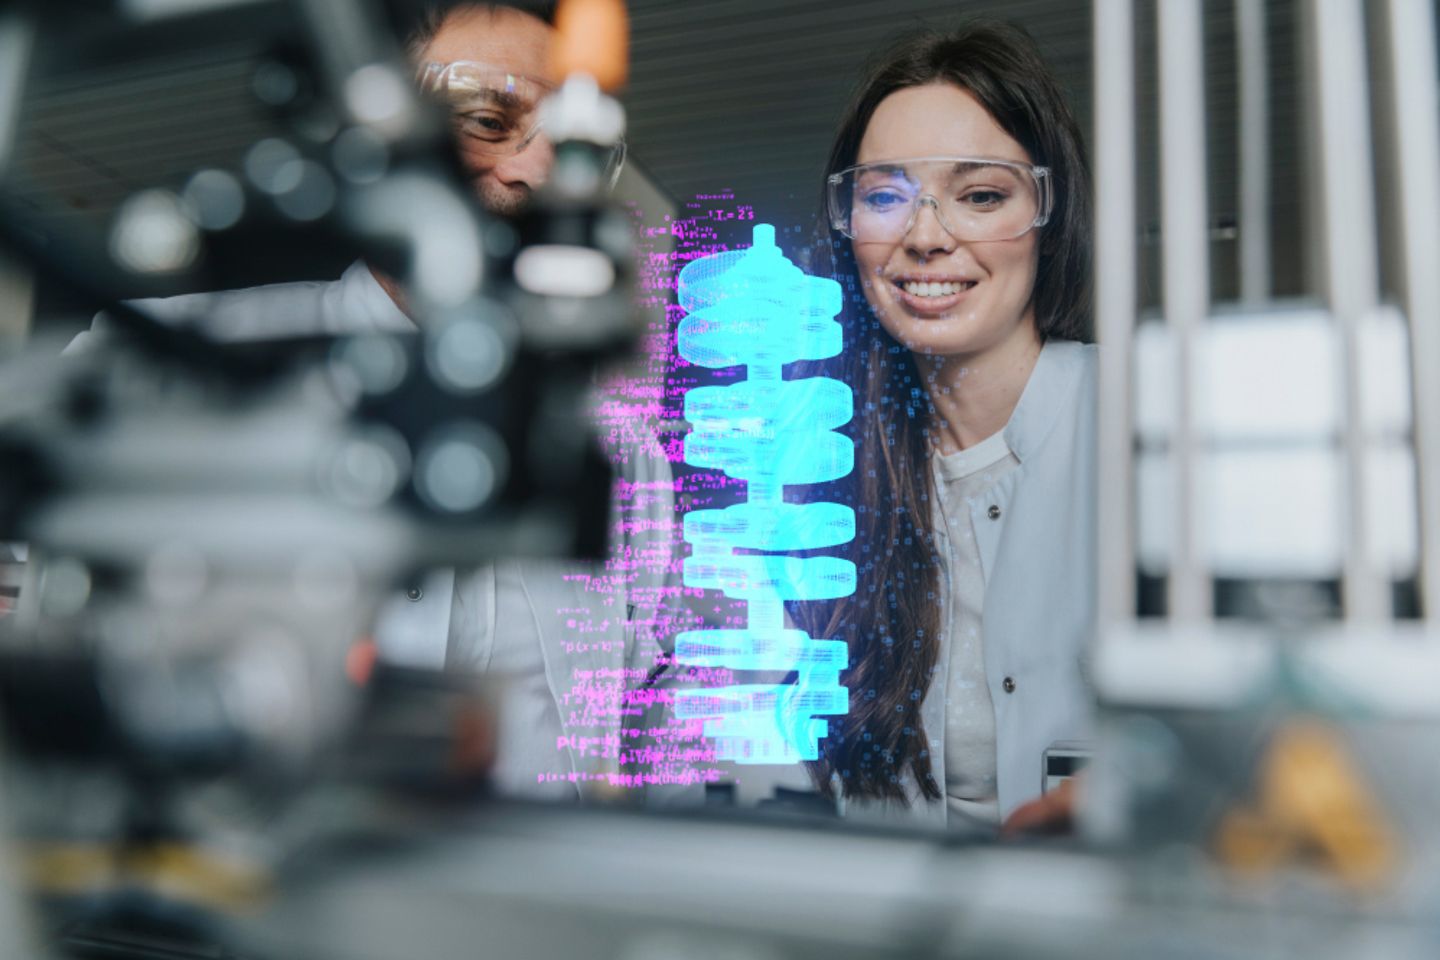 Ingenieros sonrientes examinando un sistema automatizado futurista en un laboratorio